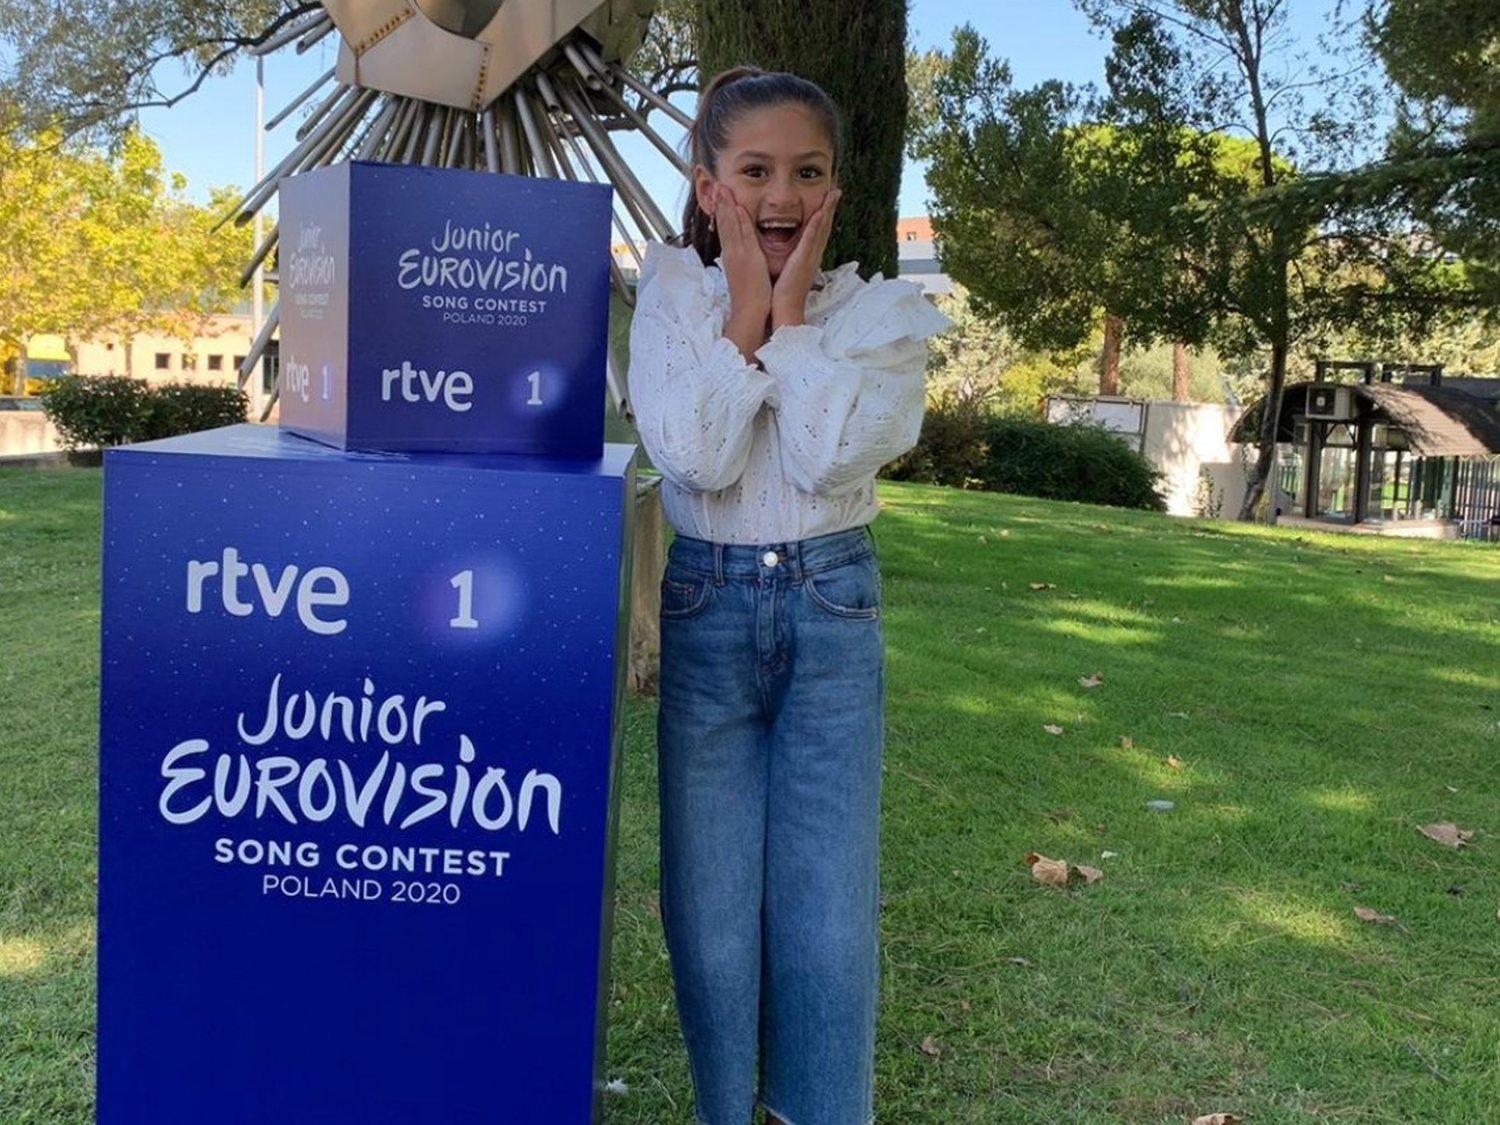 Soleá representará a España en Eurovisión Junior 2020